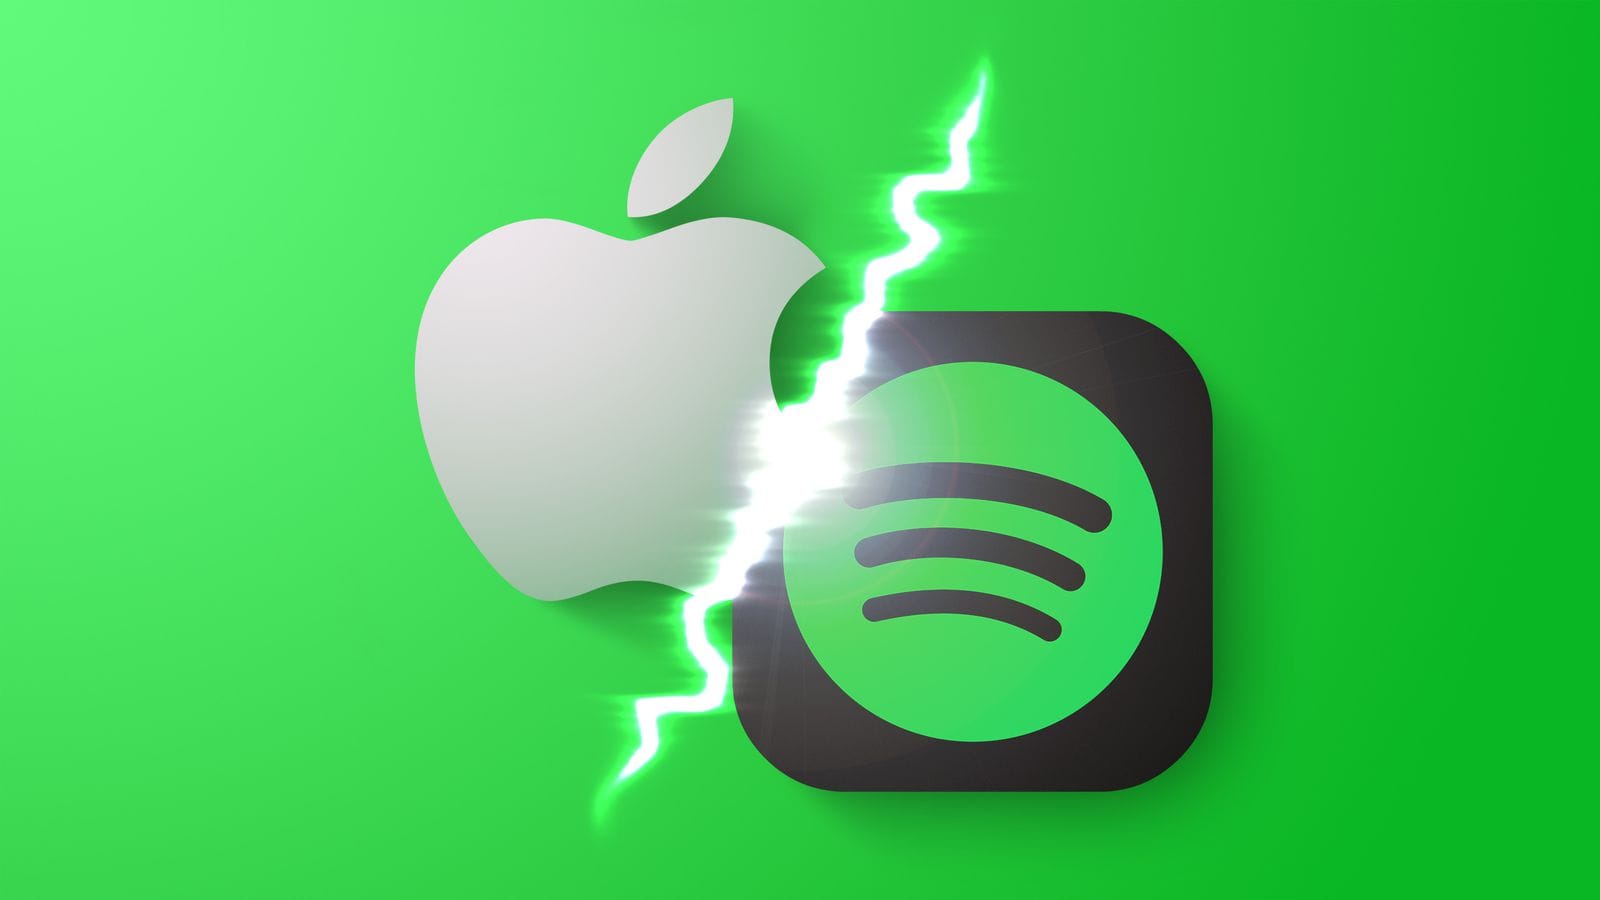 ЕС планирует позволить Spotify перенаправлять пользователей на сторонние варианты оплаты в приложении для iPhone